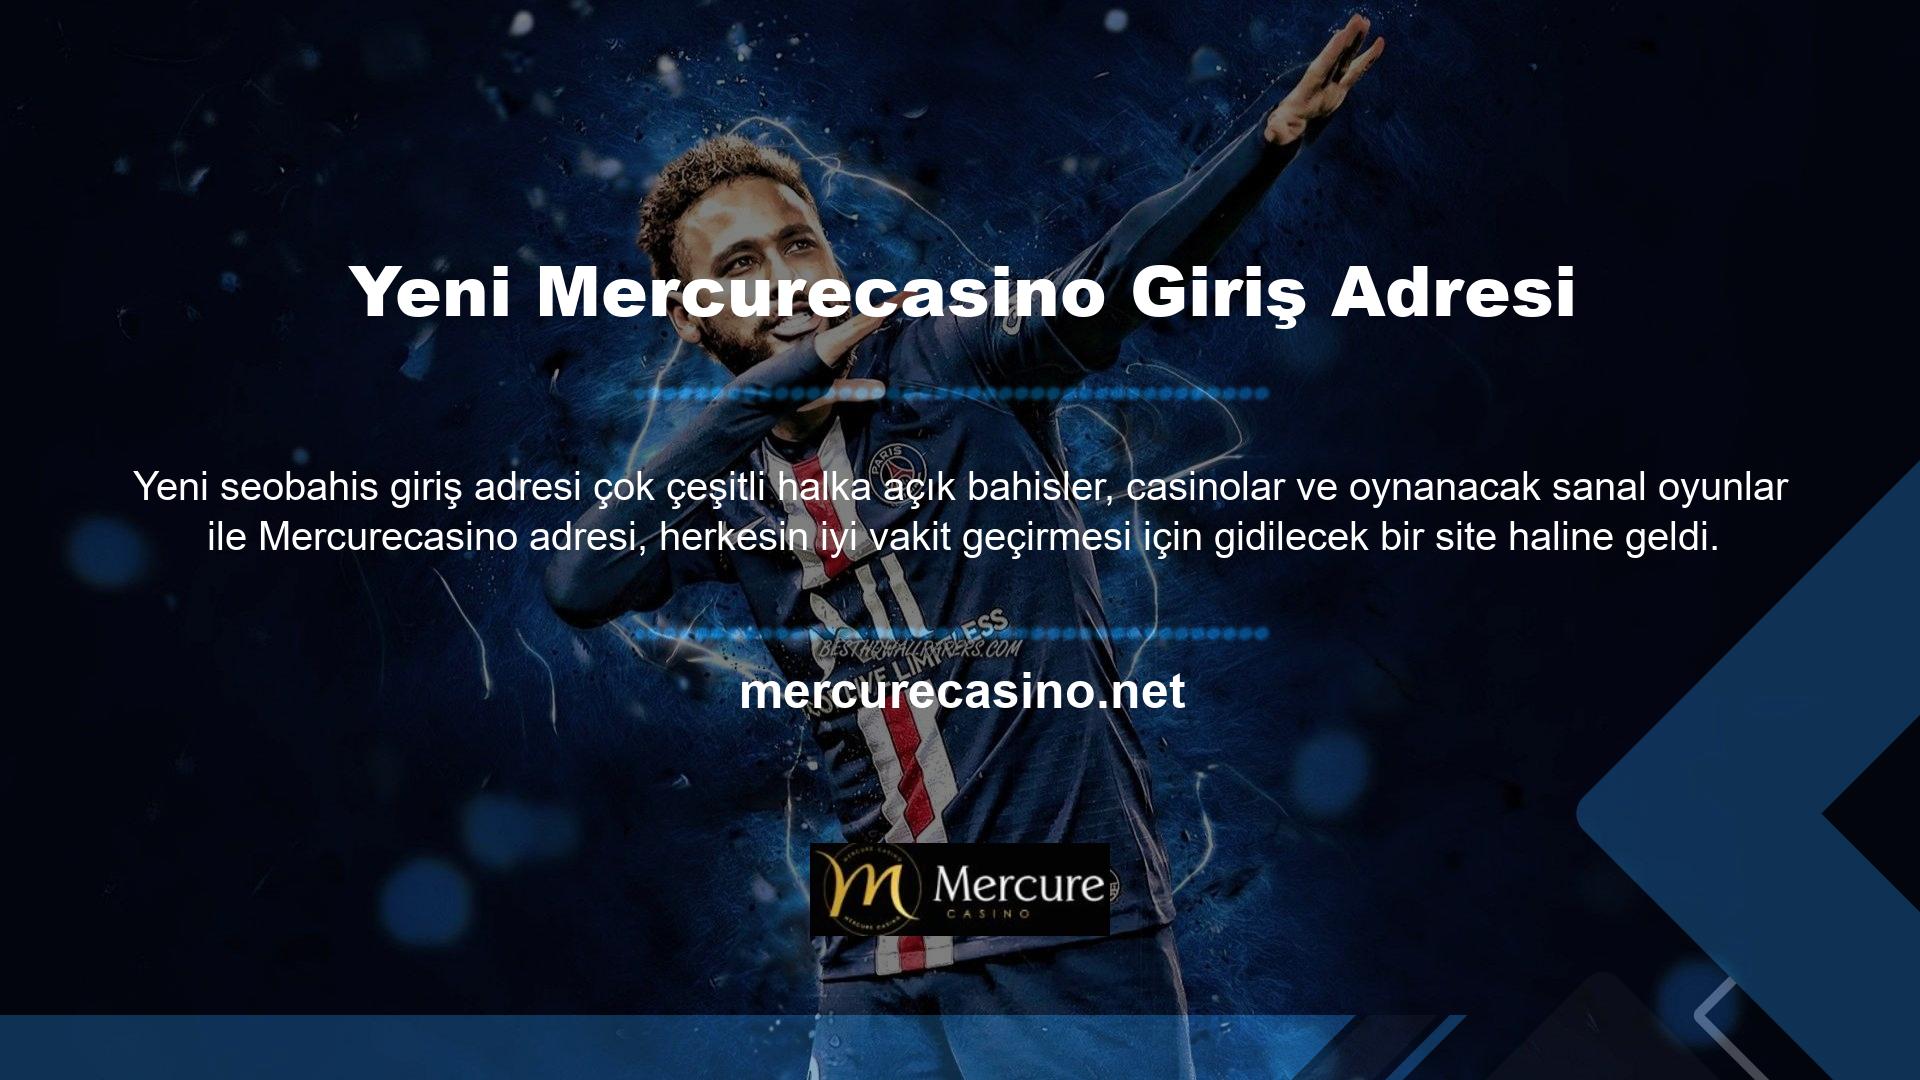 Mercurecasino web sitesinin olanaklarından faydalanmak ve burada vakit geçirmeye devam etmek için müşterilerin yeni Mercurecasino giriş adresi konusunda bilgilendirilmeleri gerekmektedir